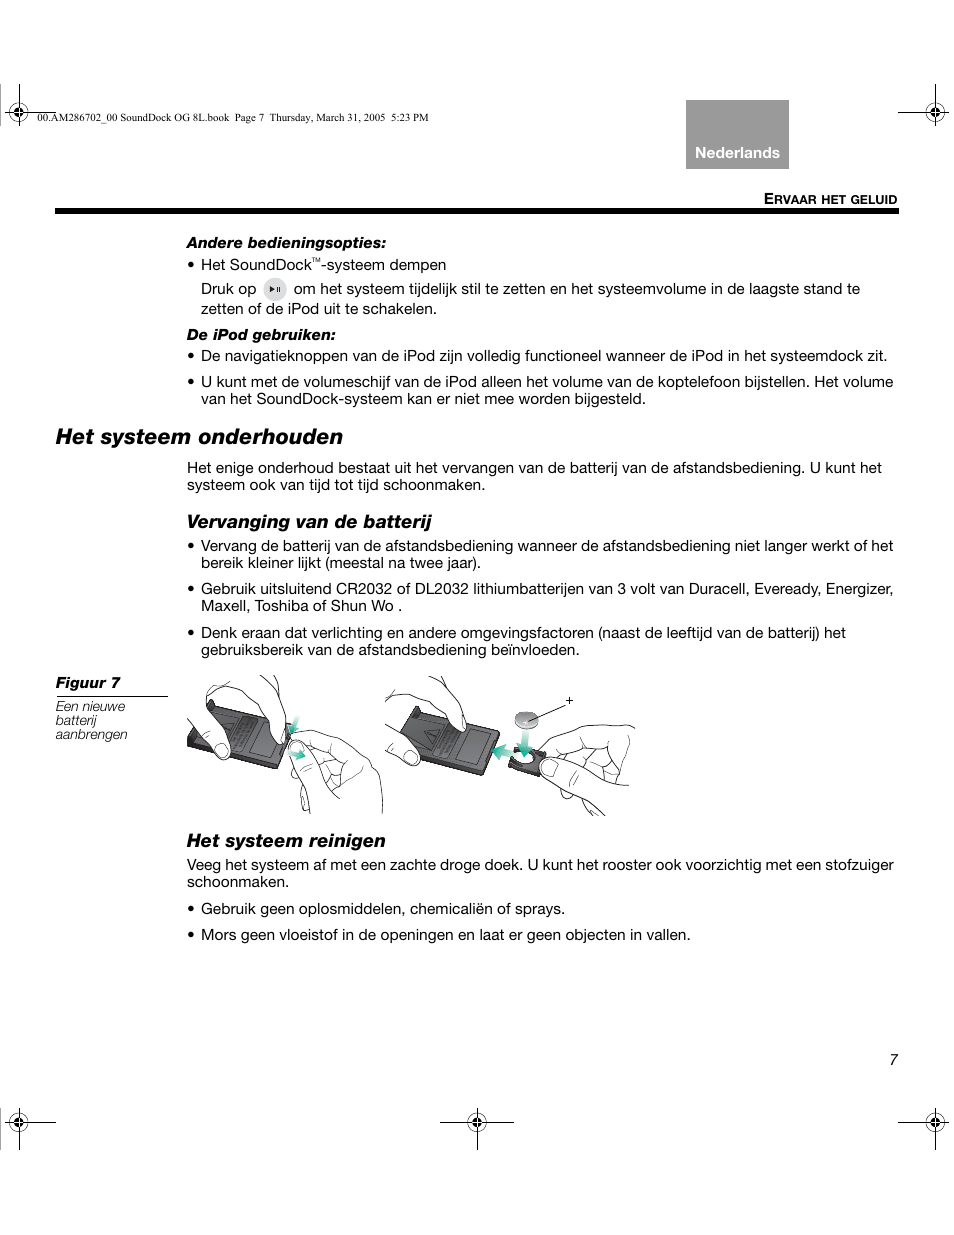 Het systeem onderhouden, Vervanging van de batterij, Het systeem reinigen | Bose SoundDock User Manual | Page 59 / 72